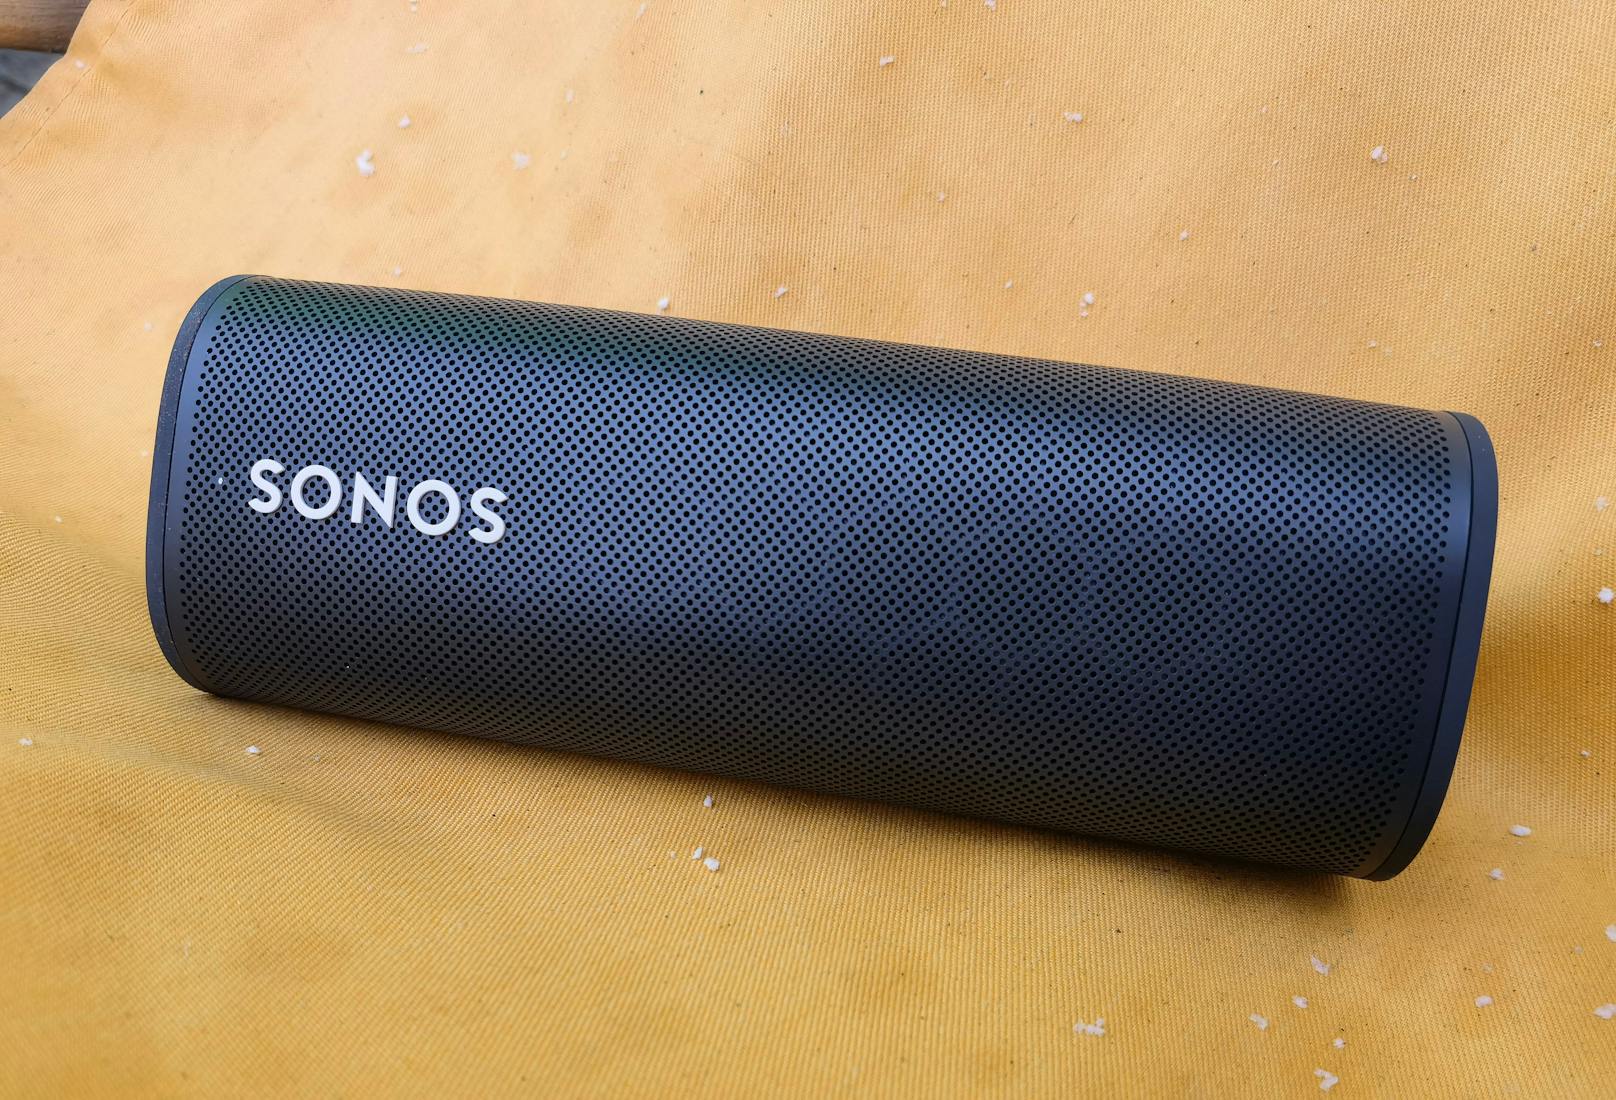 <a href="https://www.heute.at/s/sonos-bringt-neuen-portablen-smart-speaker-roam-100131845">Sonos Roam</a> ist der neueste Lautsprecher im Sortiment des Audio-Spezialisten – und er folgt dem Konzept des <a href="https://www.heute.at/s/sonos-move-im-test-der-erste-sonos-zum-mitnehmen-47484301">Sonos Move</a>. War dieser noch ein Speaker,...